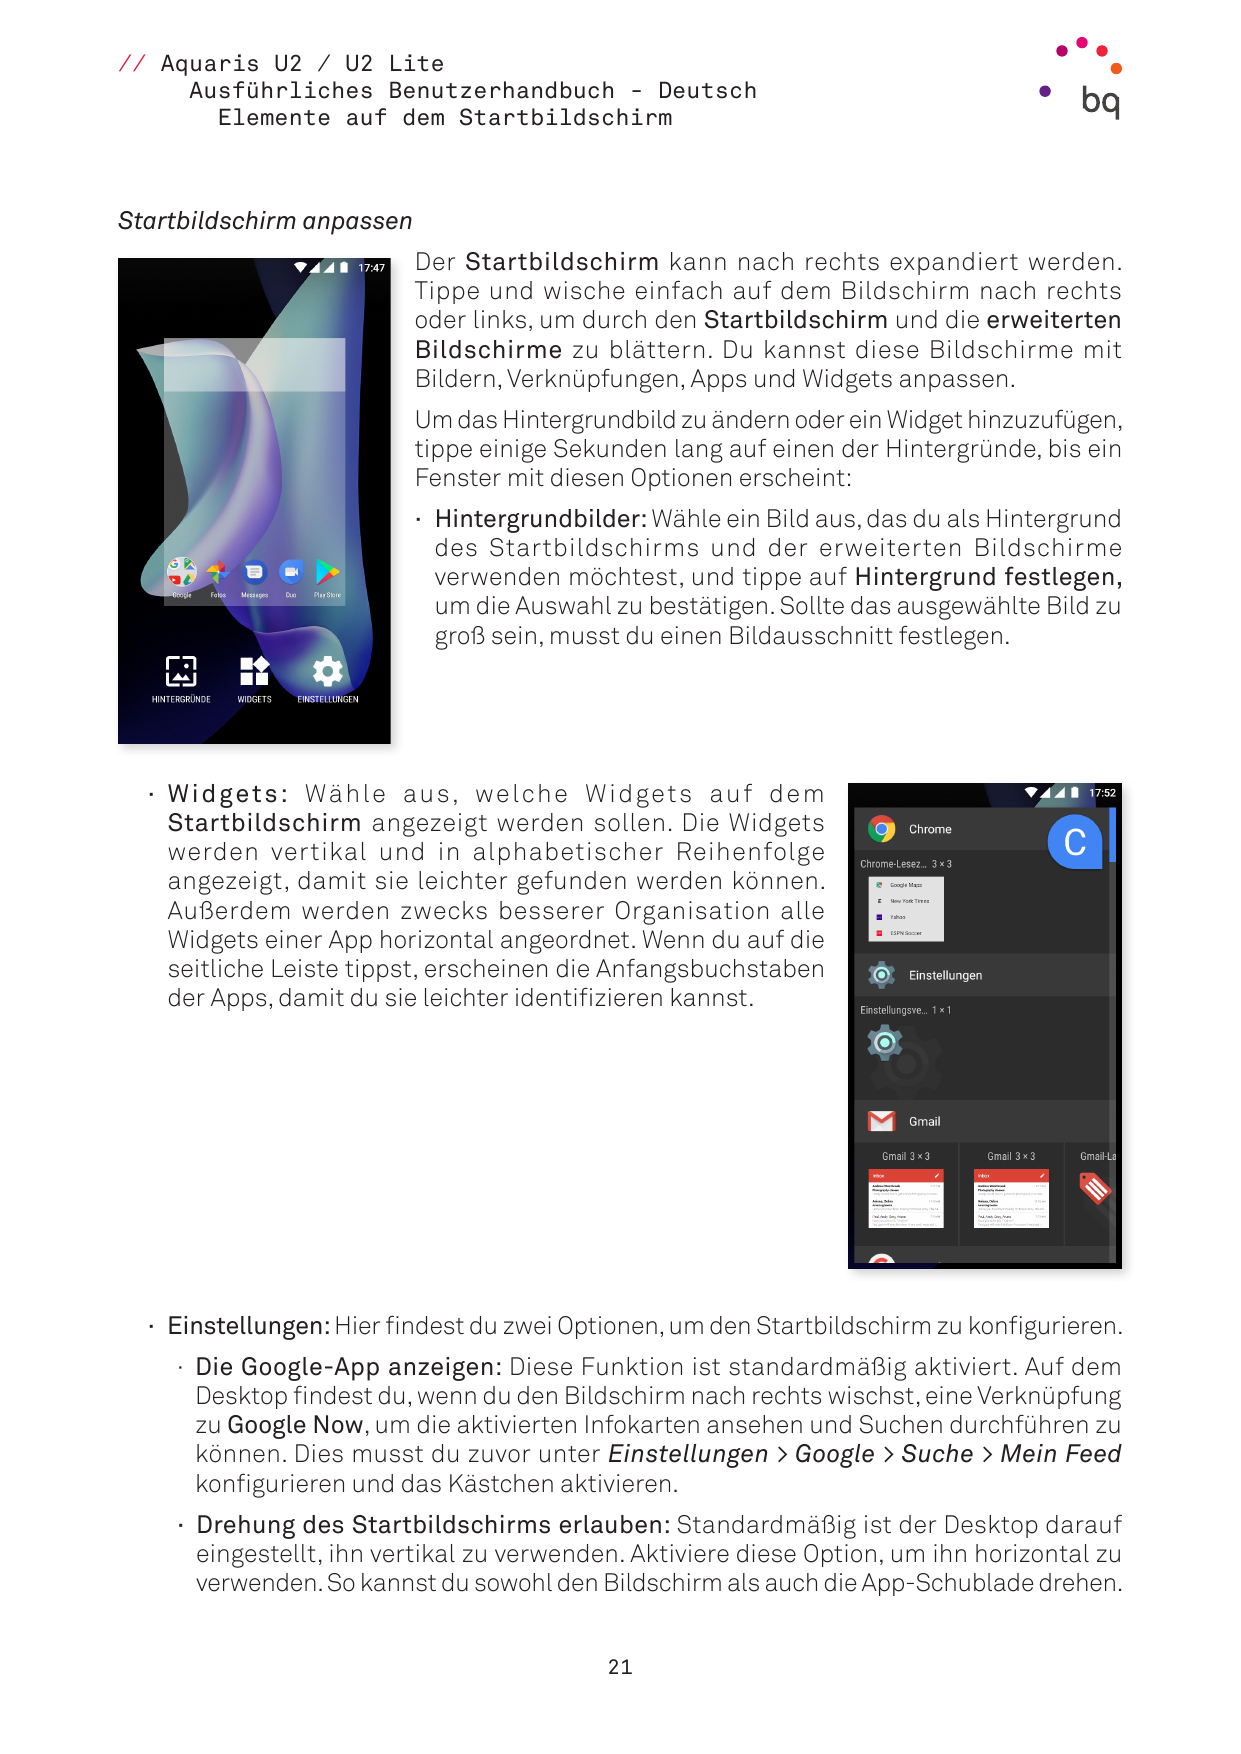 // Aquaris U2 / U2 LiteAusführliches Benutzerhandbuch - DeutschElemente auf dem StartbildschirmStartbildschirm anpassenDer Start